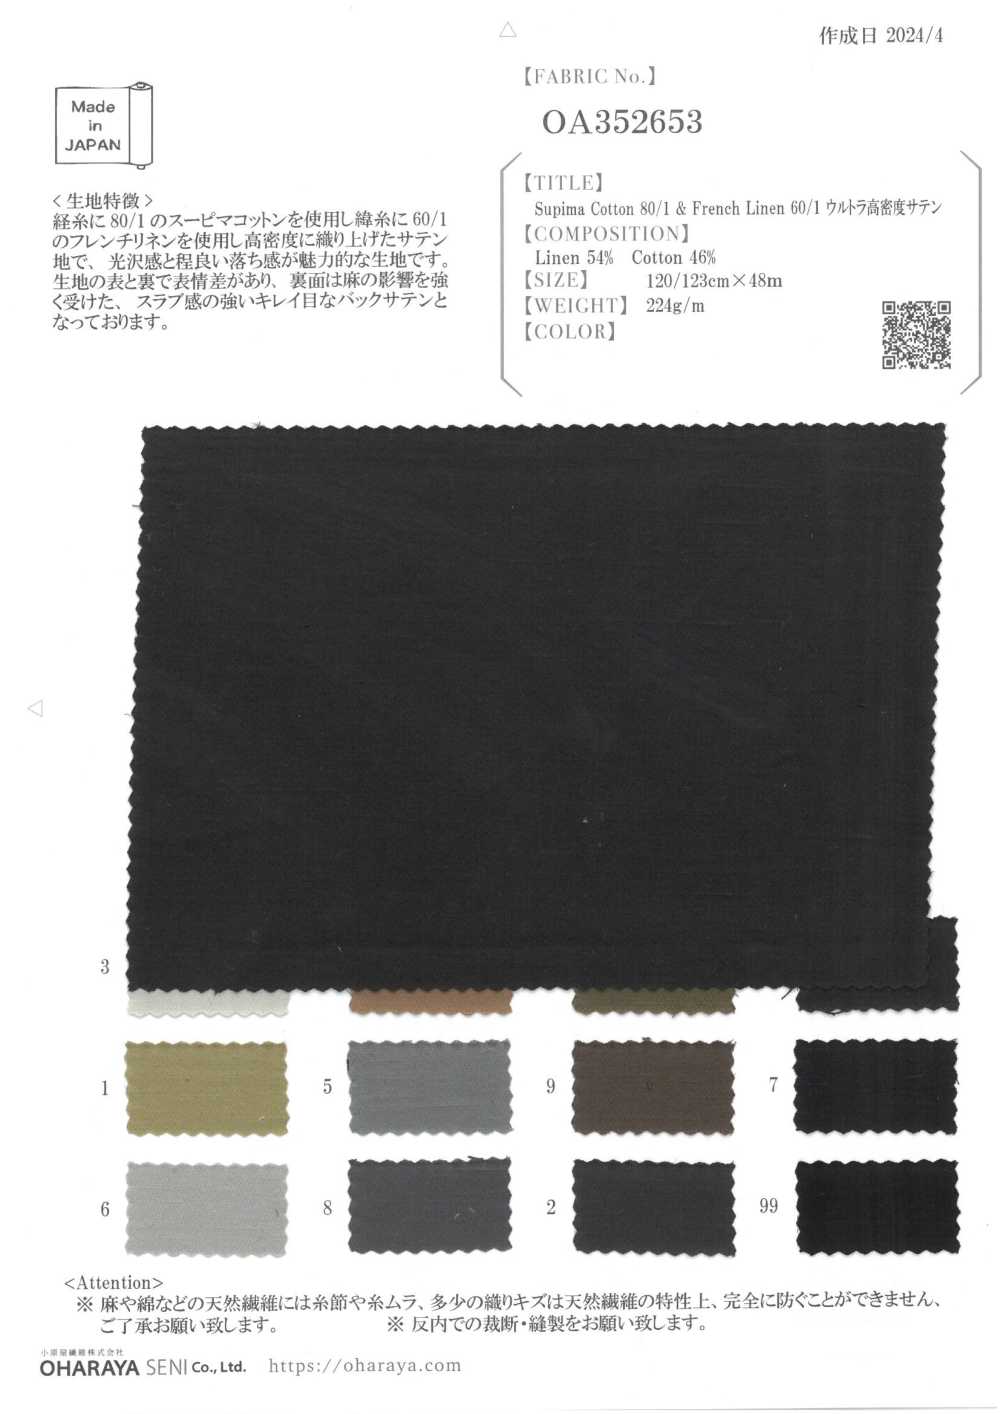 OA352653 Coton Supima 80/1 & Lin Français 60/1 Satin Ultra Dense[Fabrication De Textile] Oharayaseni